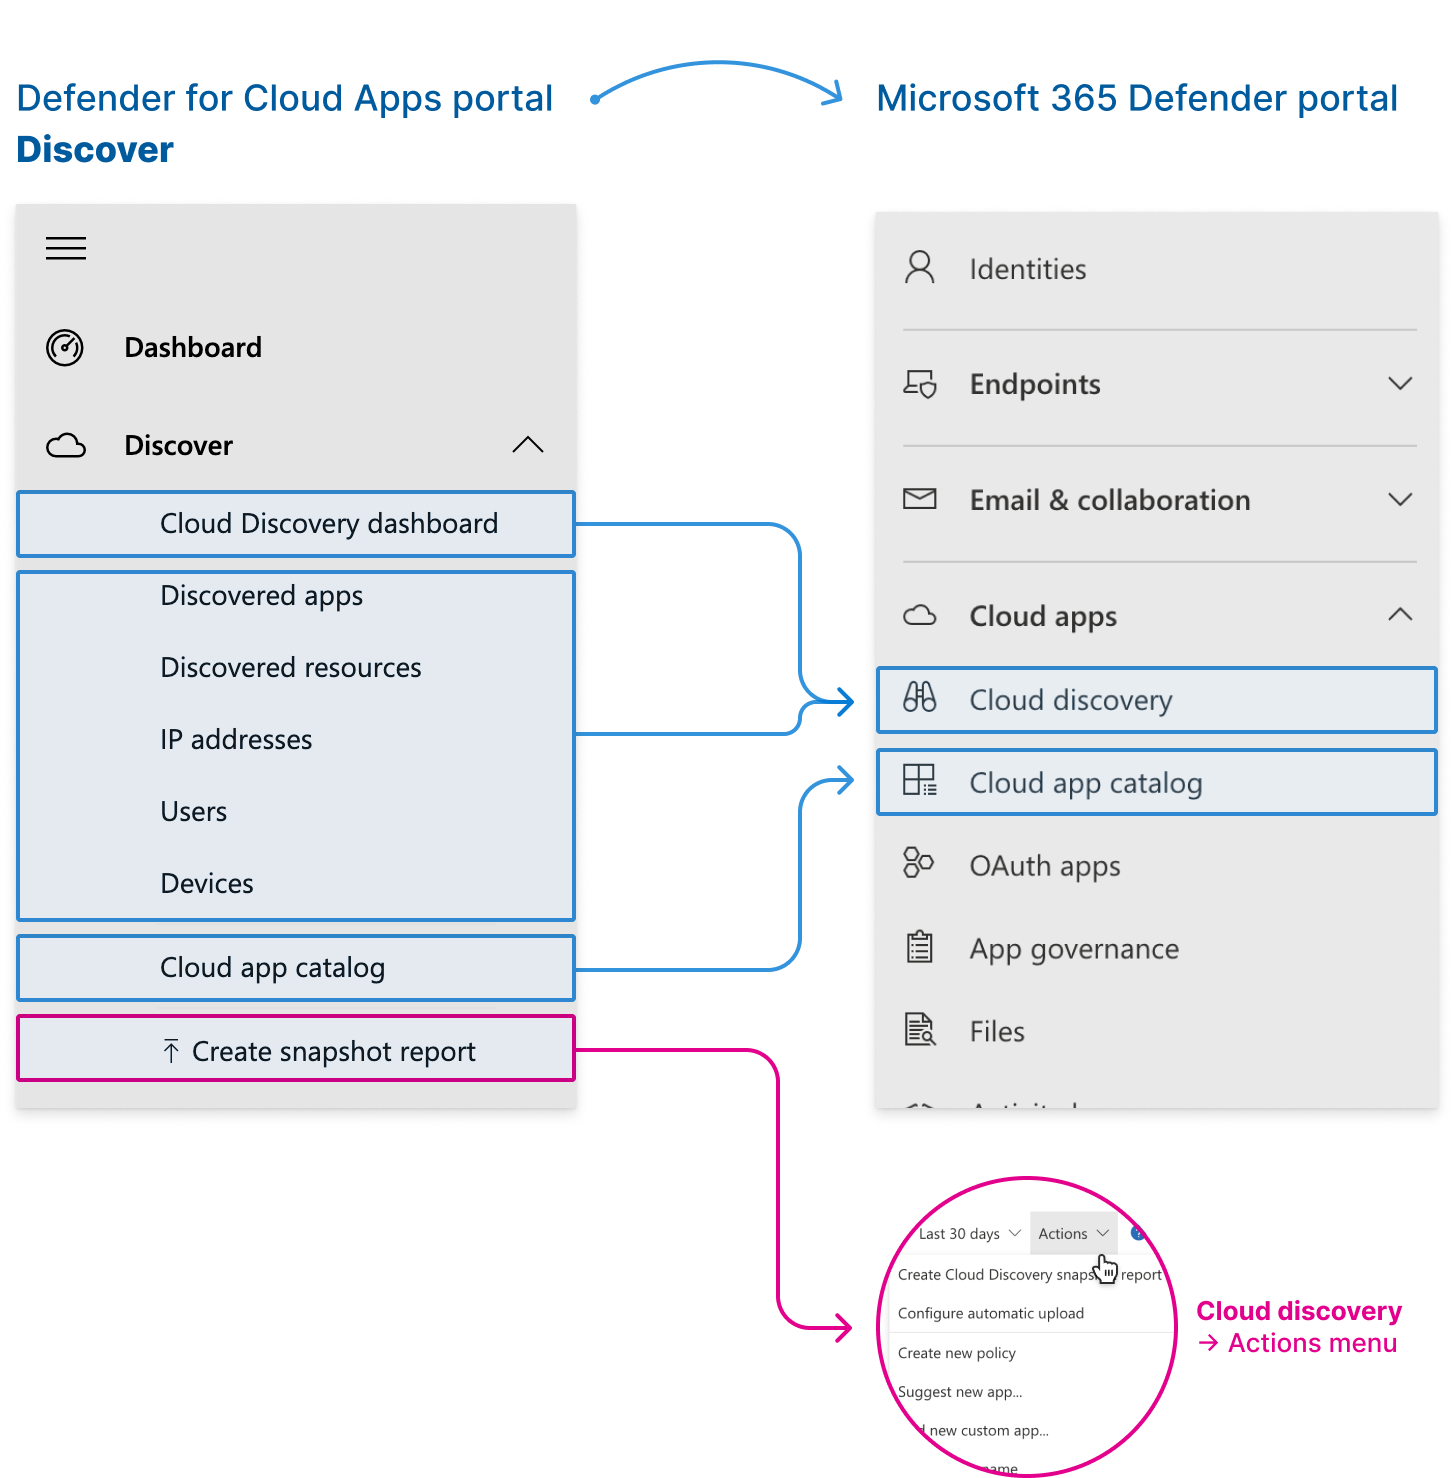 Die neuen Speicherorte für Cloud Discovery-Features im Microsoft Defender-Portal